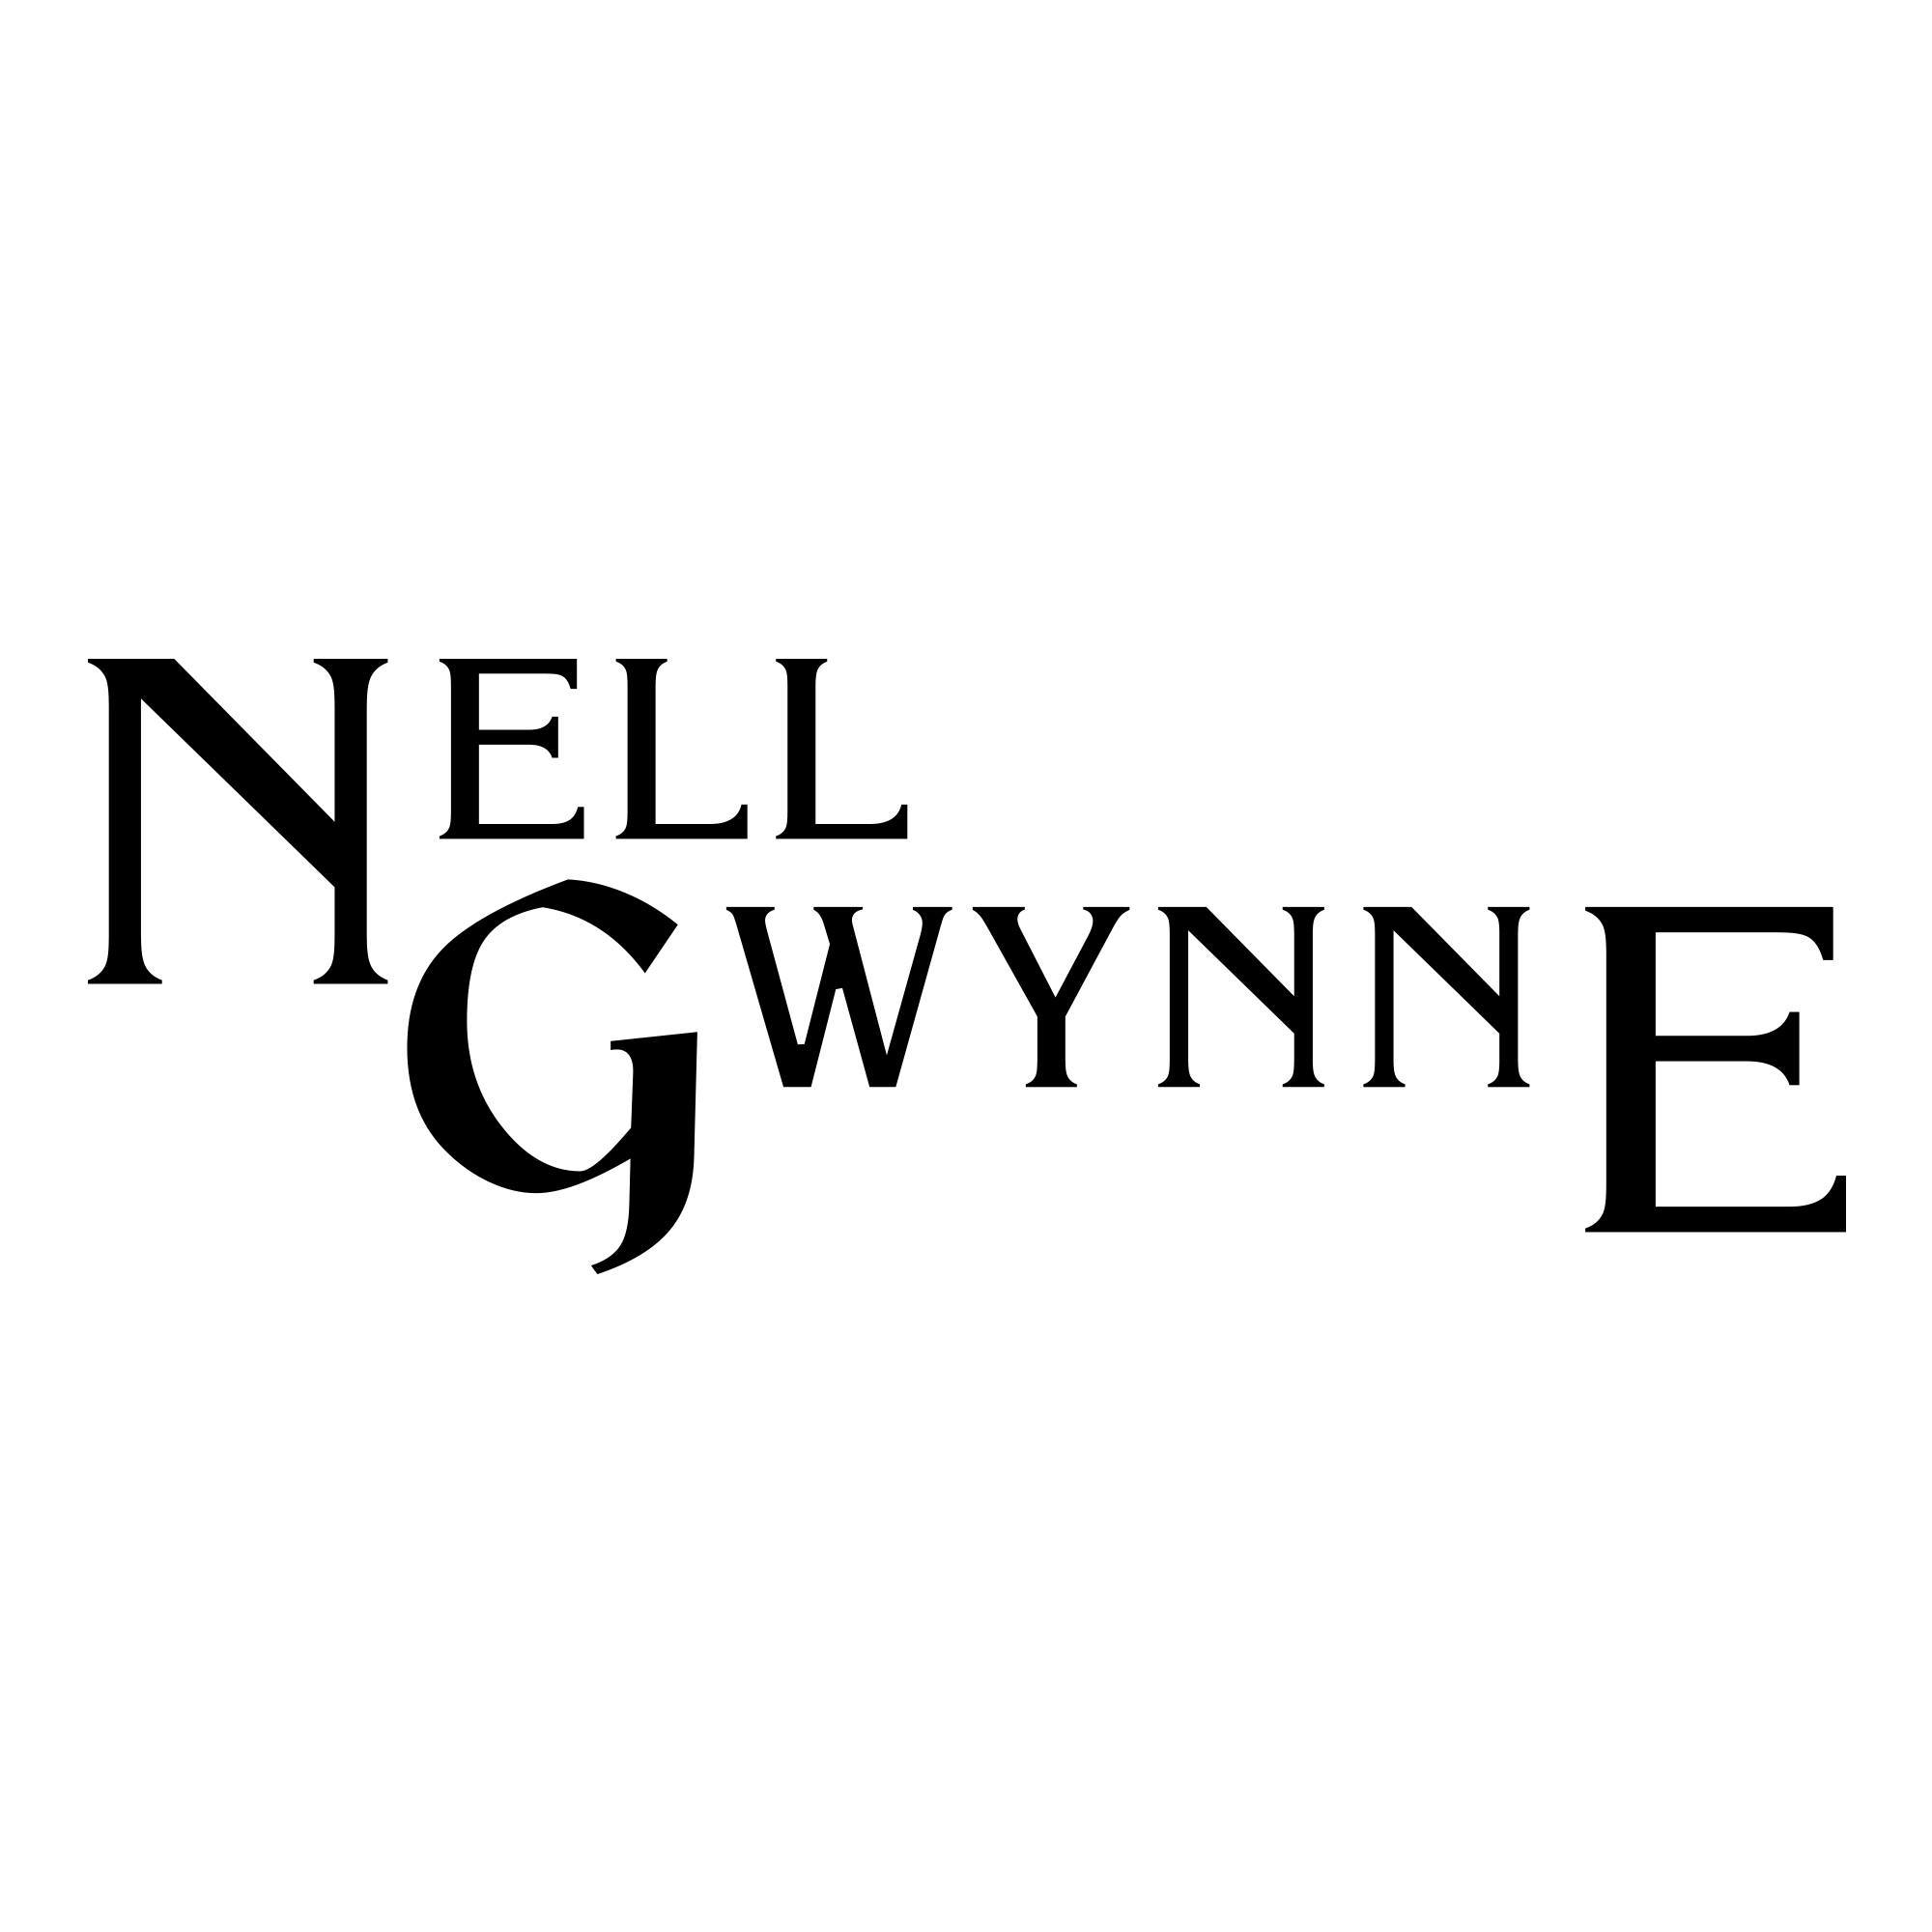 Nell Gwynne - Coming Soon in UAE